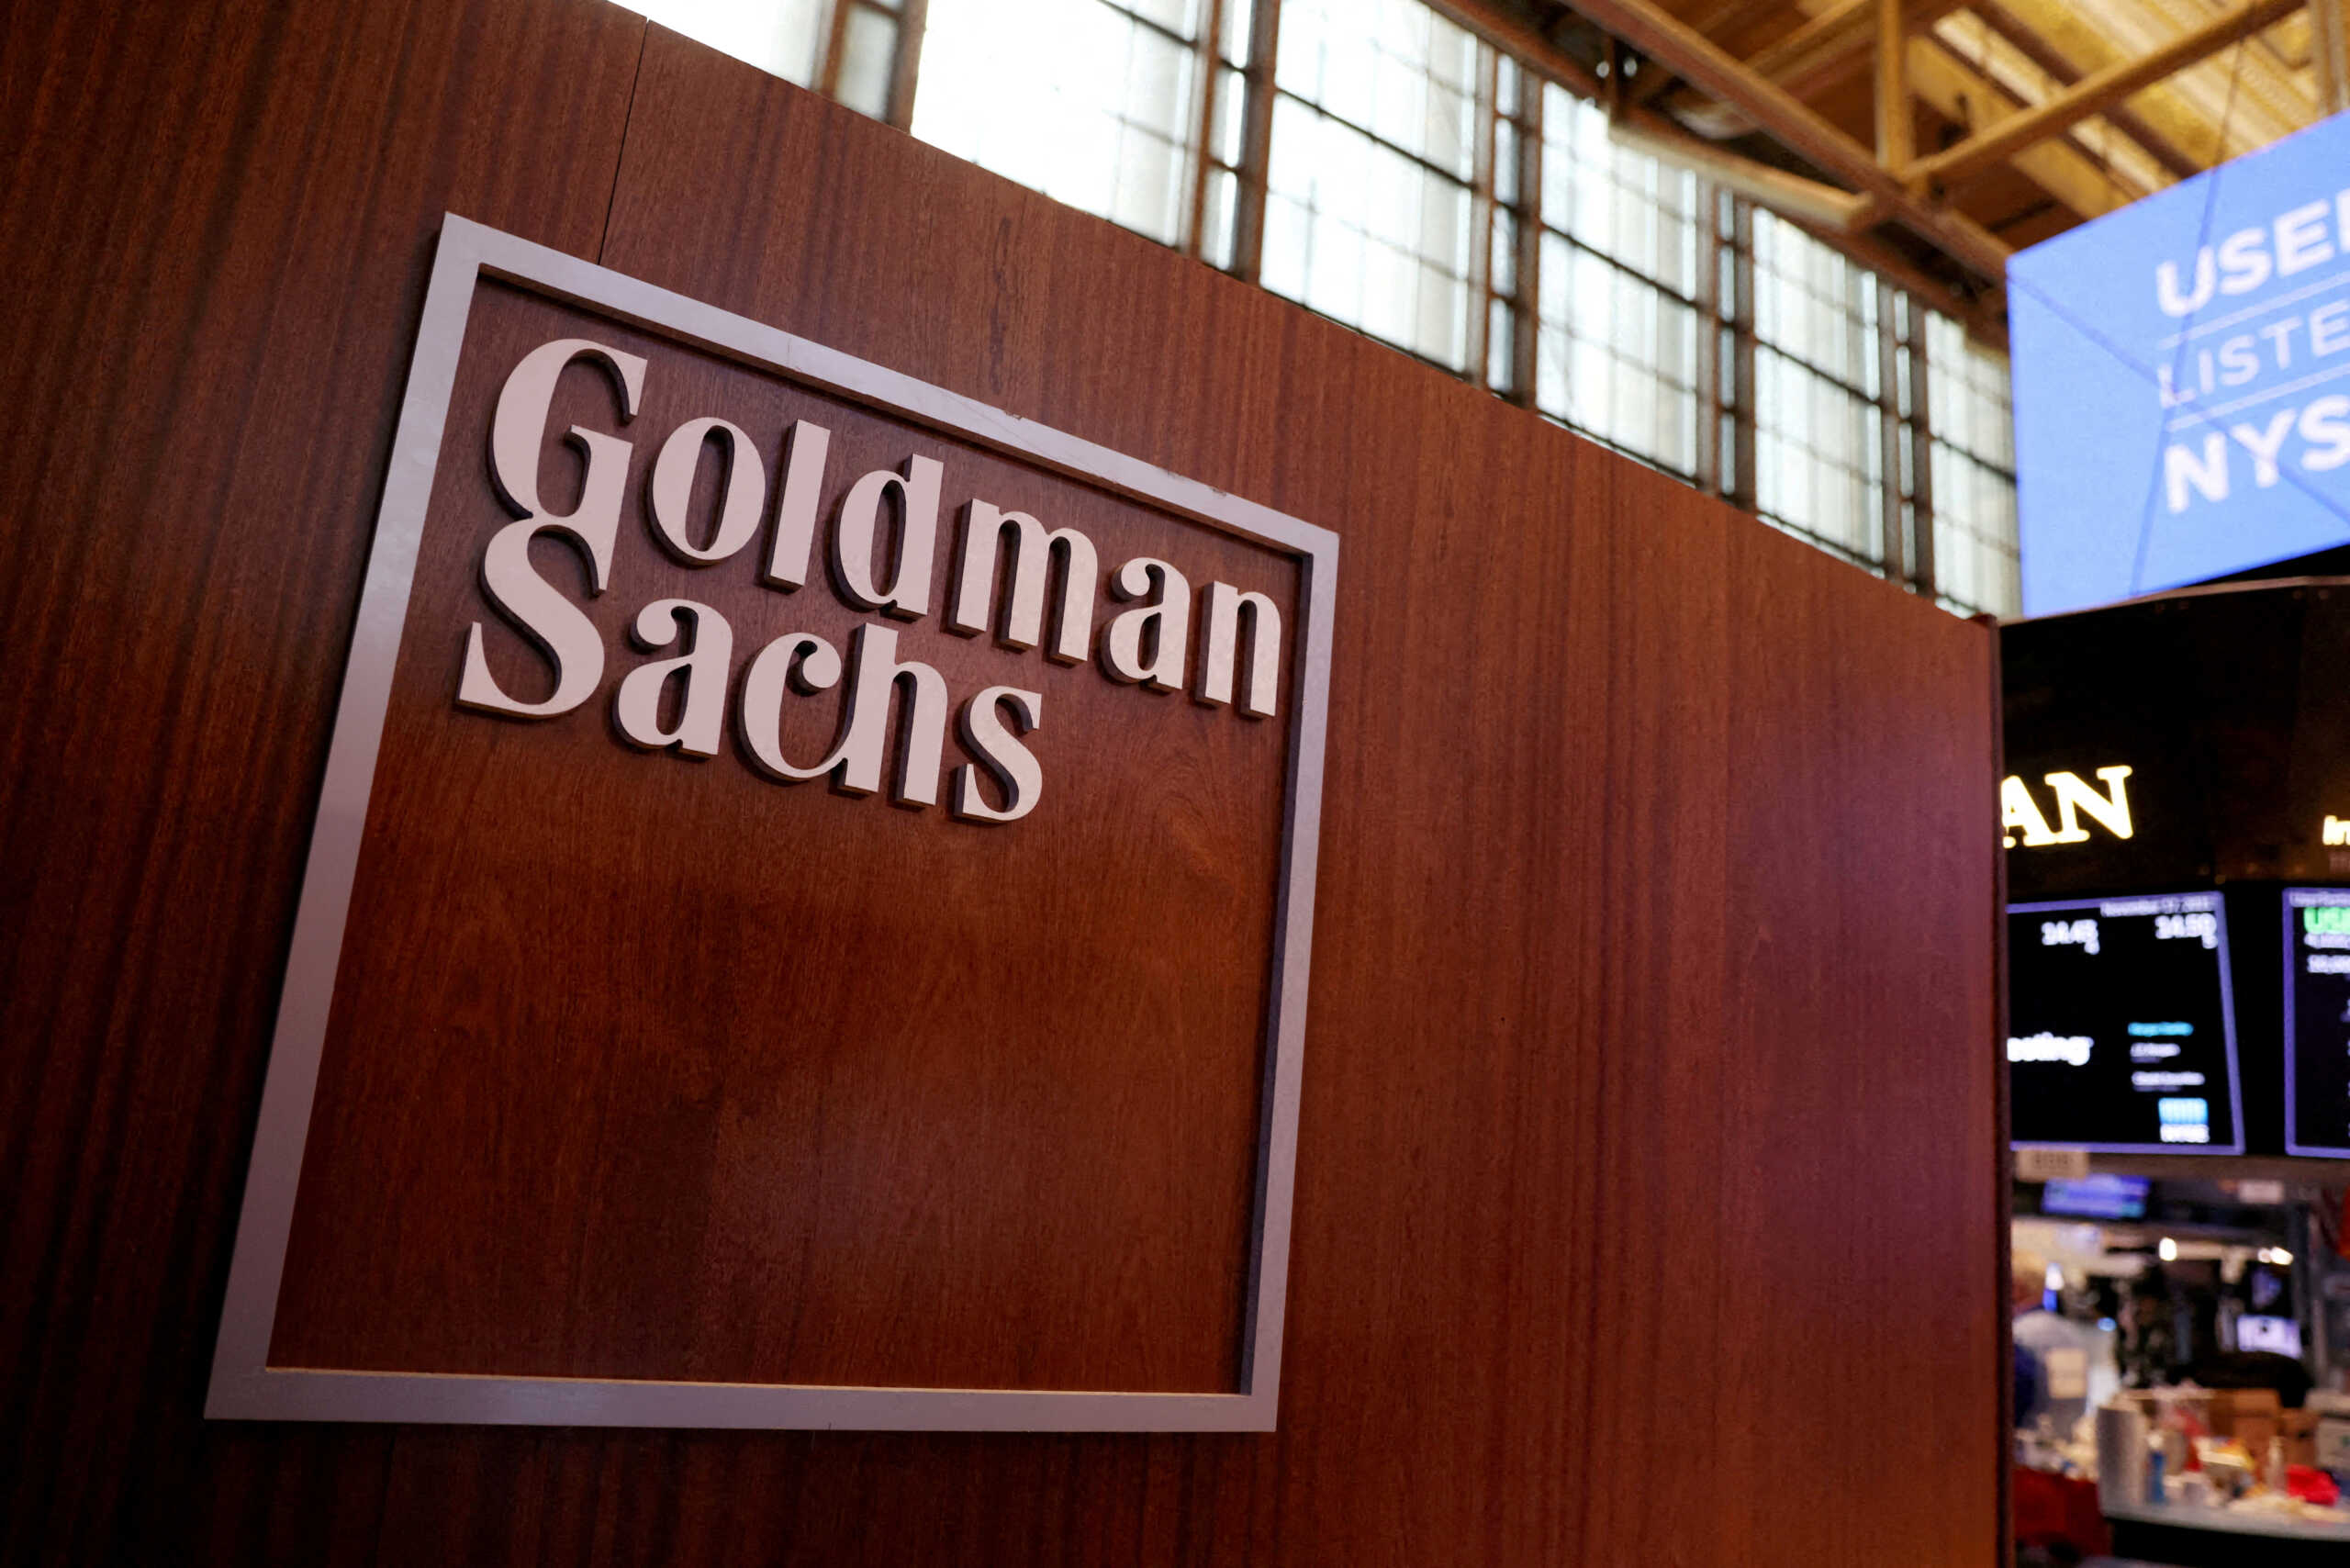 ΗΠΑ: H Goldman Sachs καταβάλει 215 εκατ. σε εργαζόμενες που έκαναν αγωγή για σεξουαλική παρενόχληση και διακρίσεις